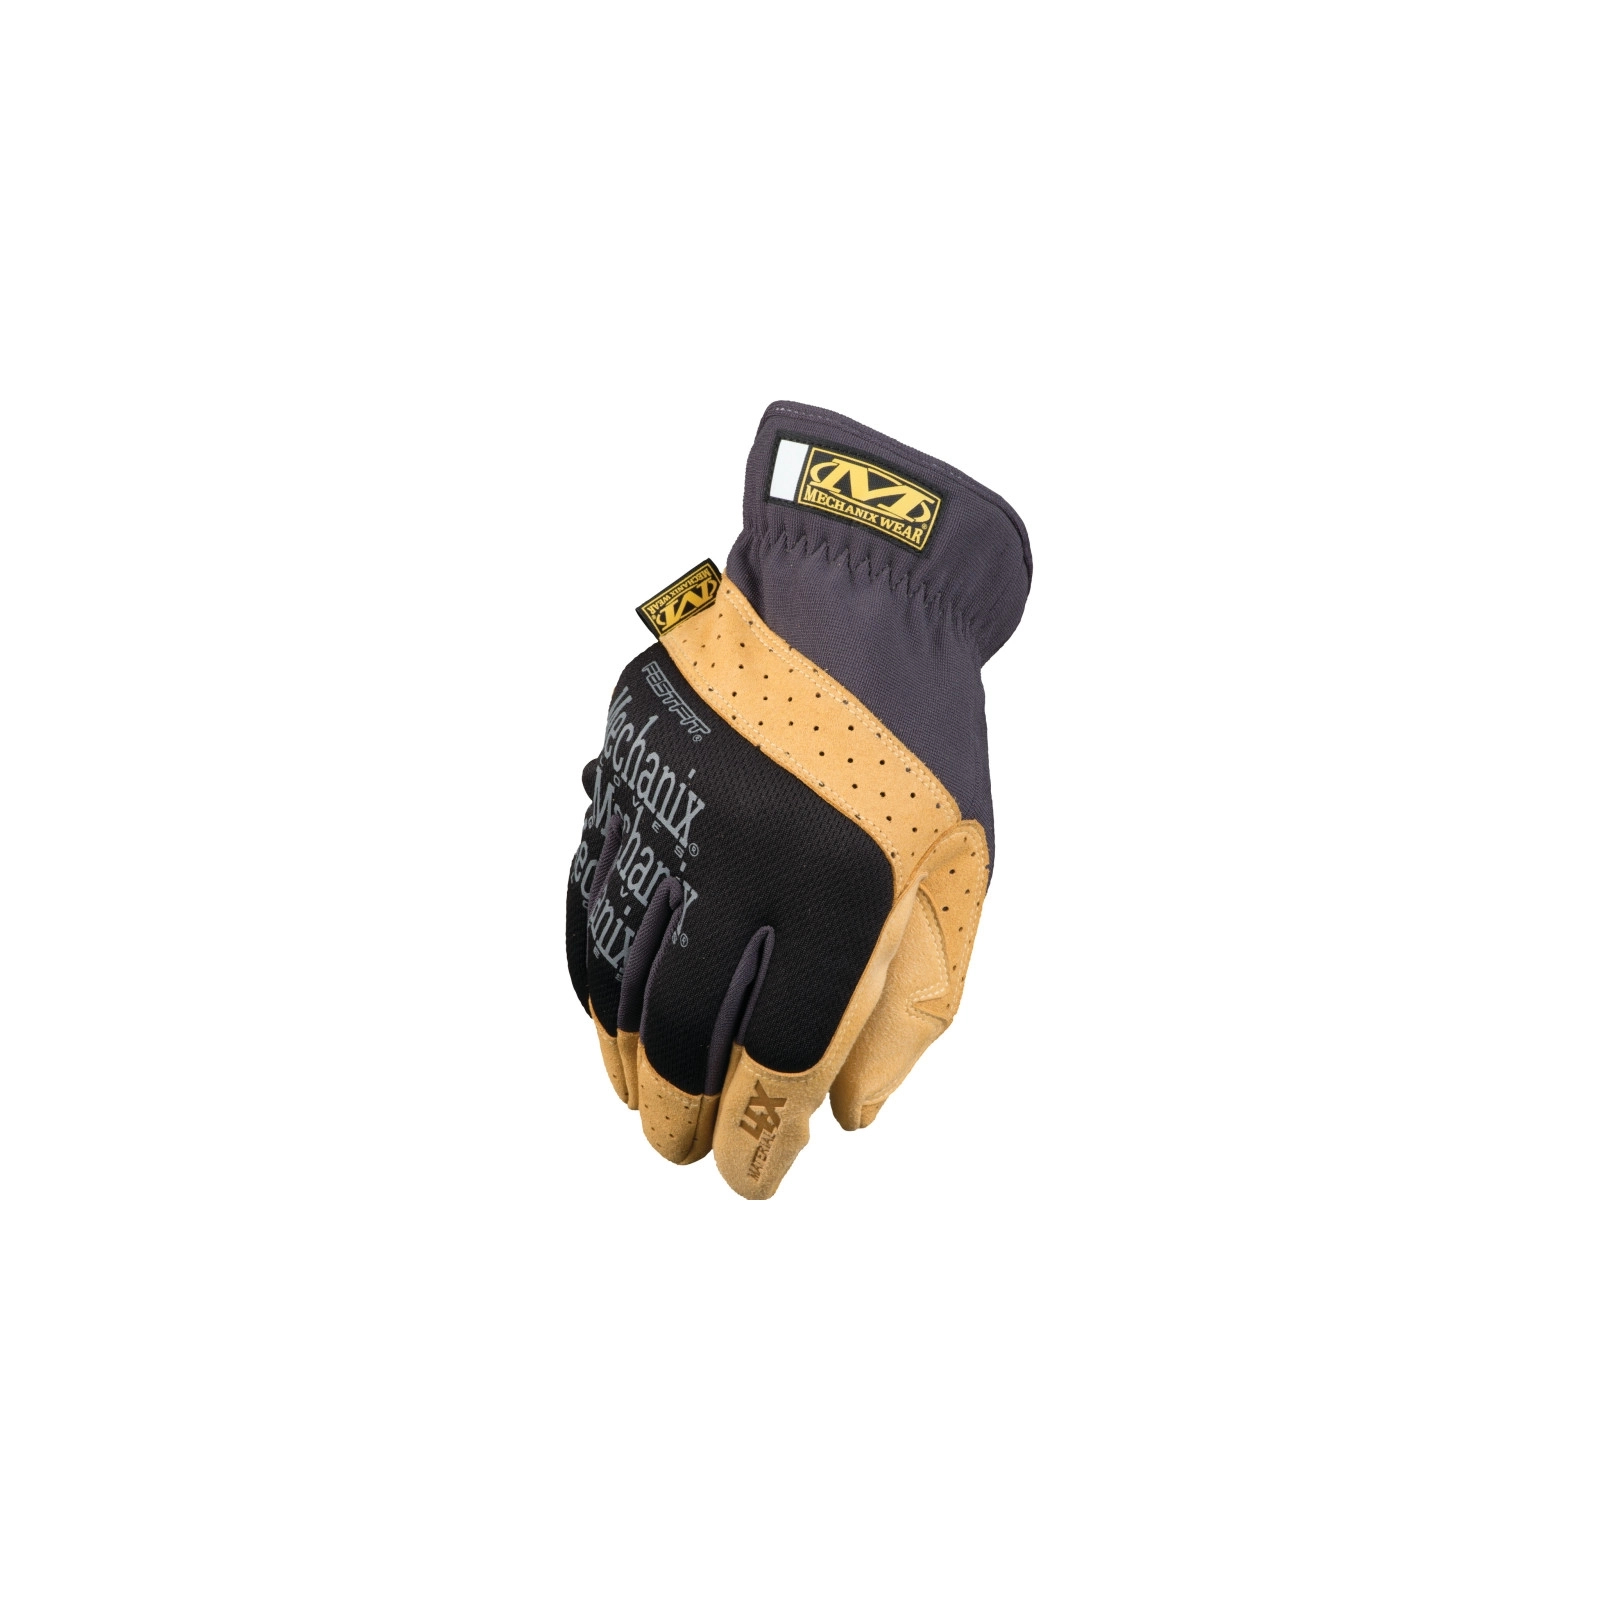 Защитные перчатки Mechanix Material4X Fastfit (MD) (MF4X-75-009)